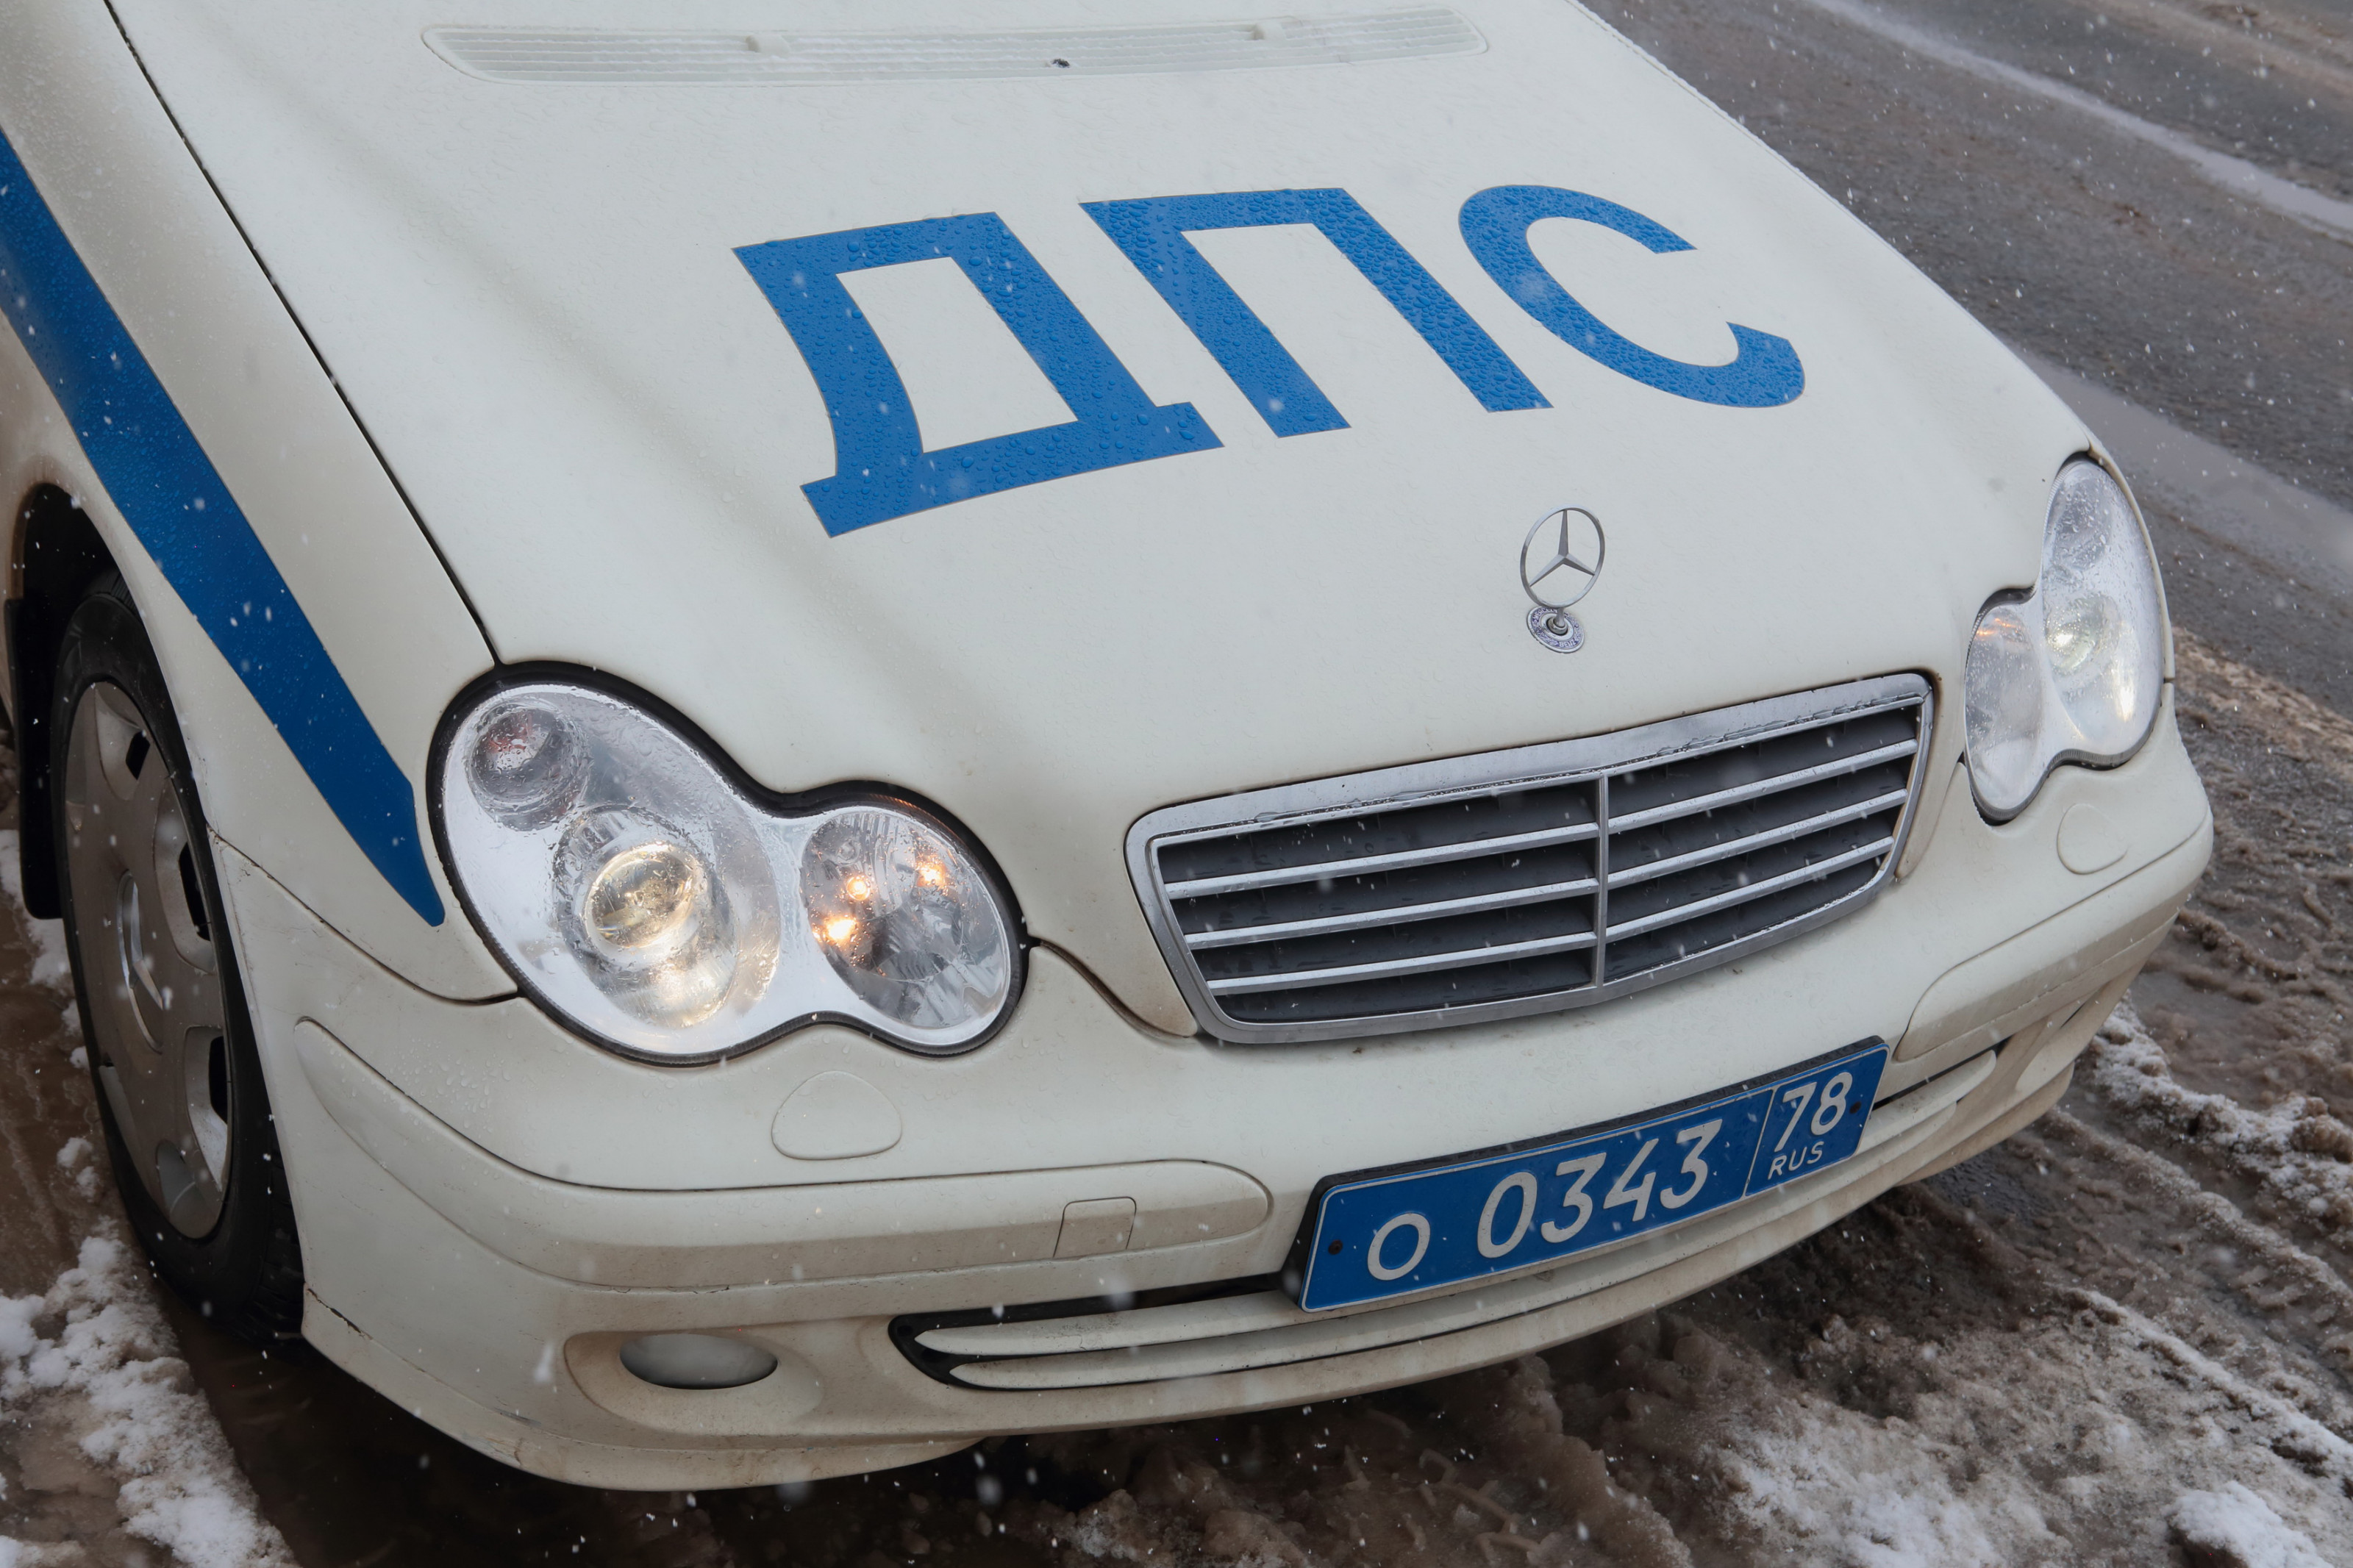 Три человека погибли в ДТП в Новосибирской области